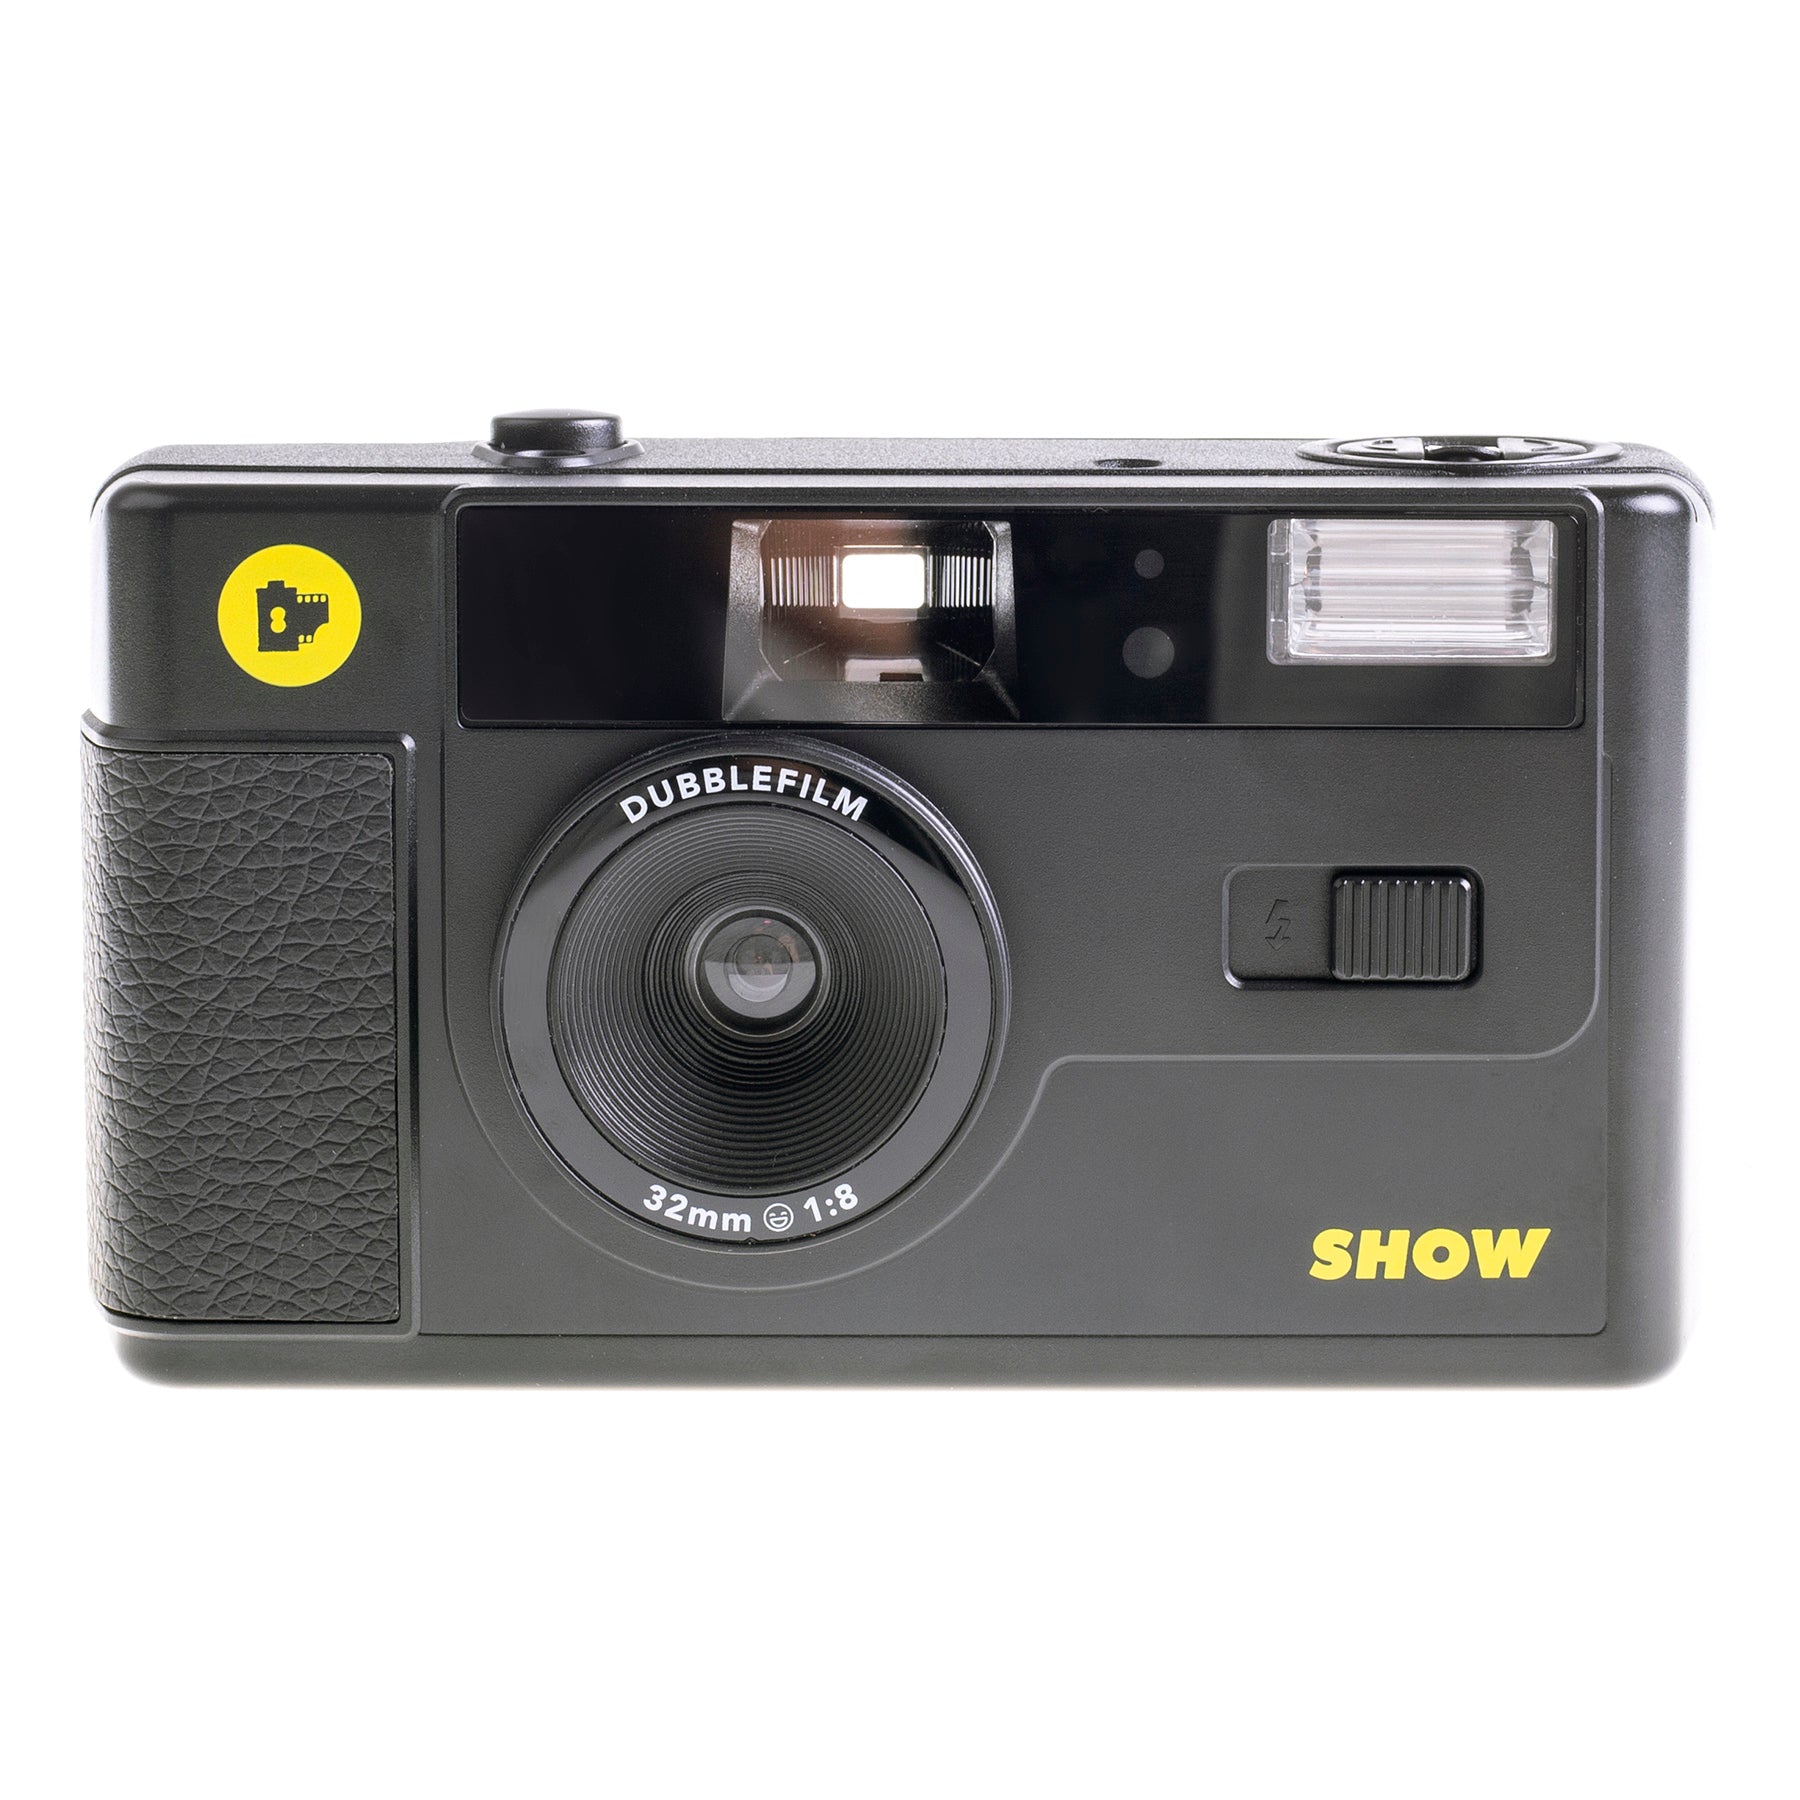 SHOW camera - Black